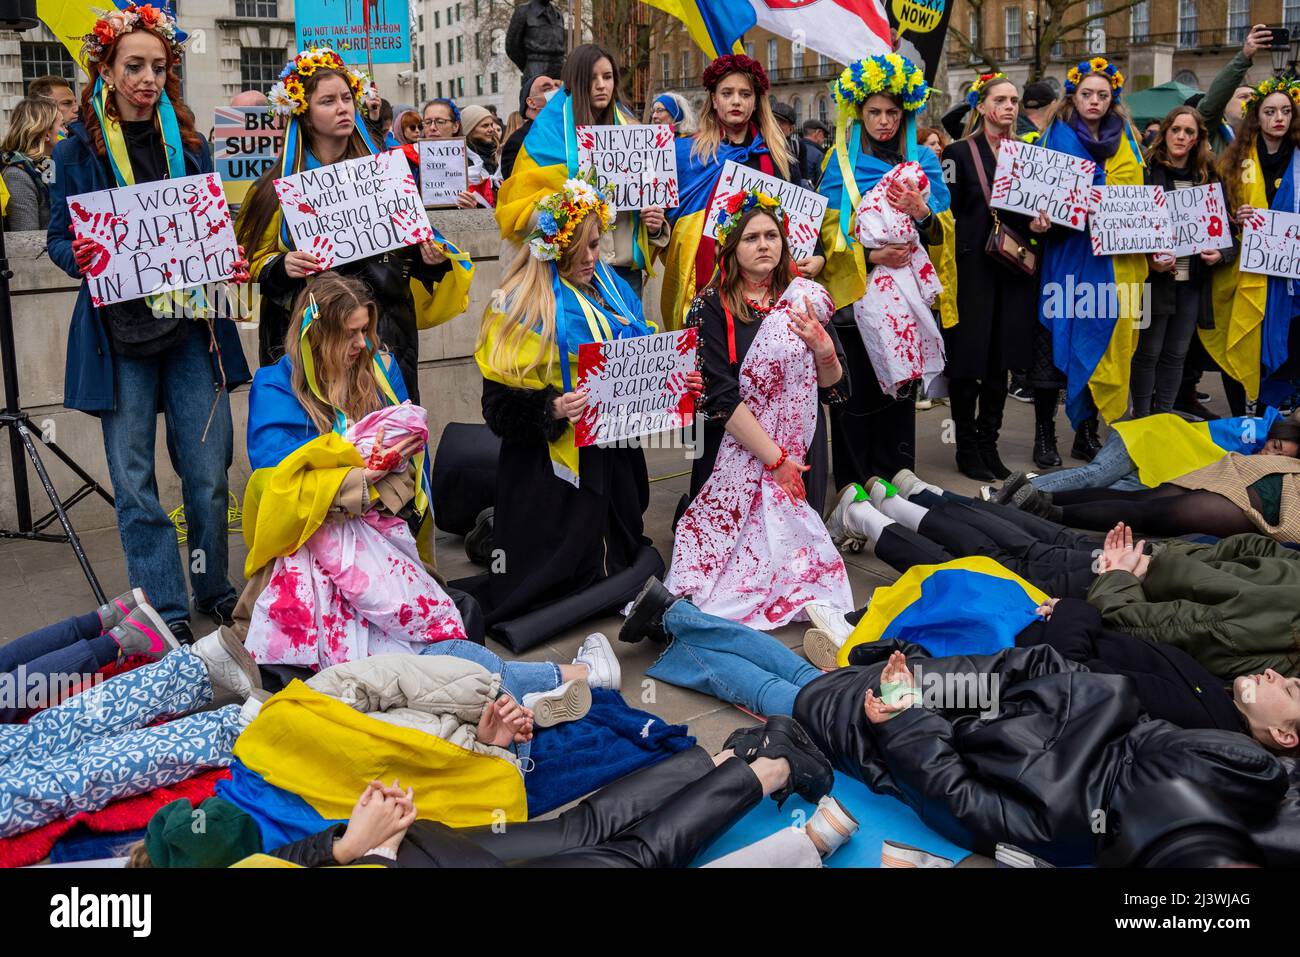 Des manifestants qui mènent une mort-dans, faisant référence aux civils ukrainiens tués dans des villes comme Bucha pendant la guerre avec la Russie. Femmes avec des bébés sanglants Banque D'Images